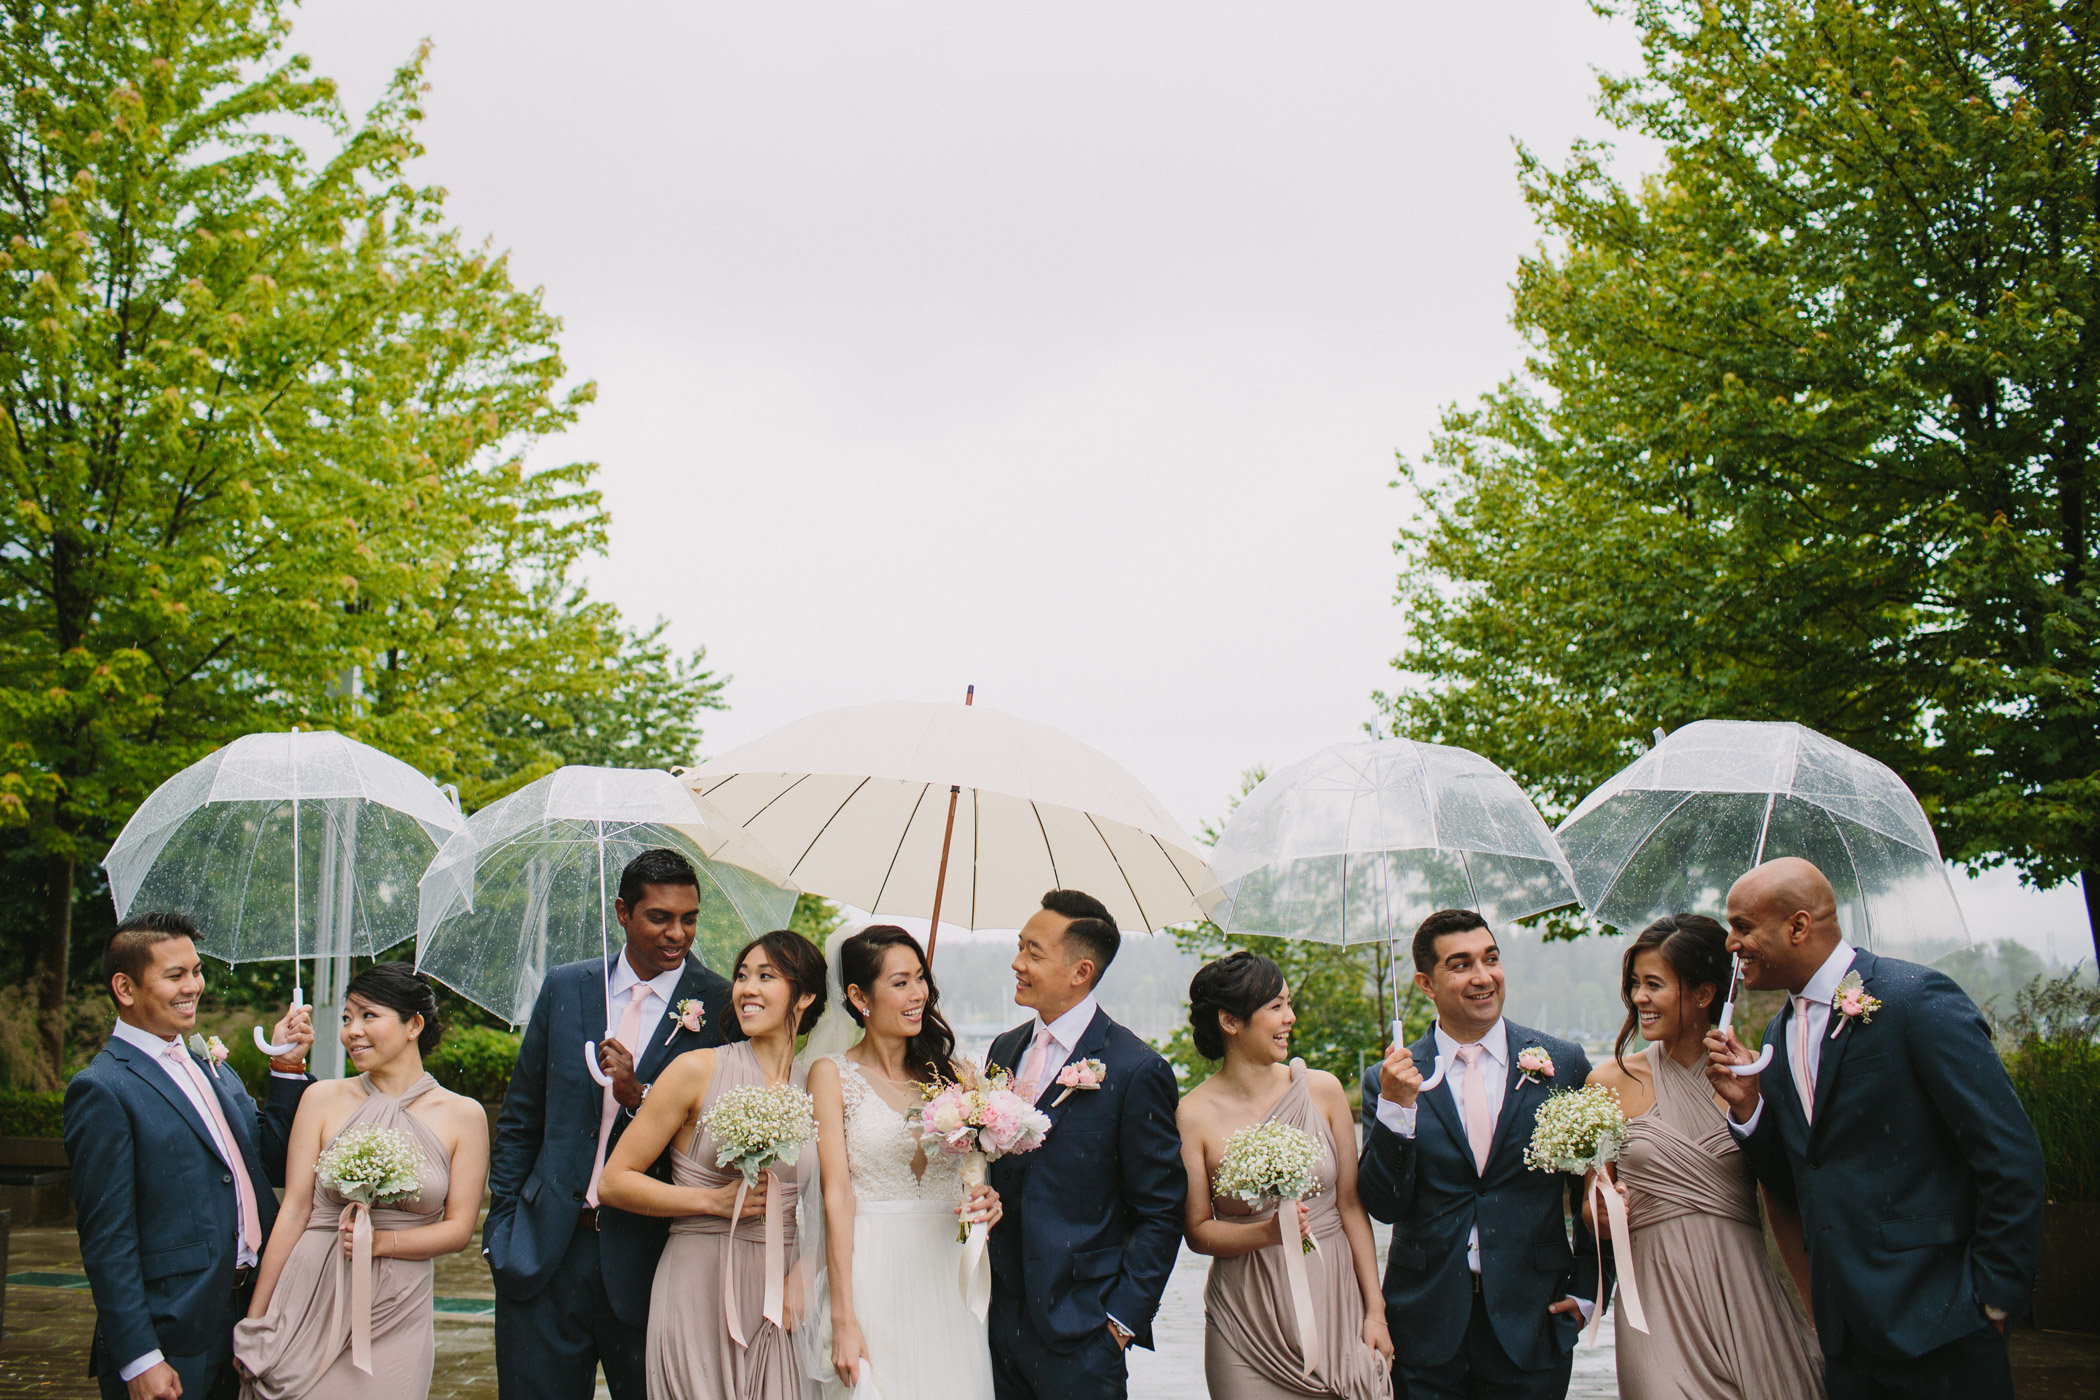 Vancouver Wedding Party with Umbrellas